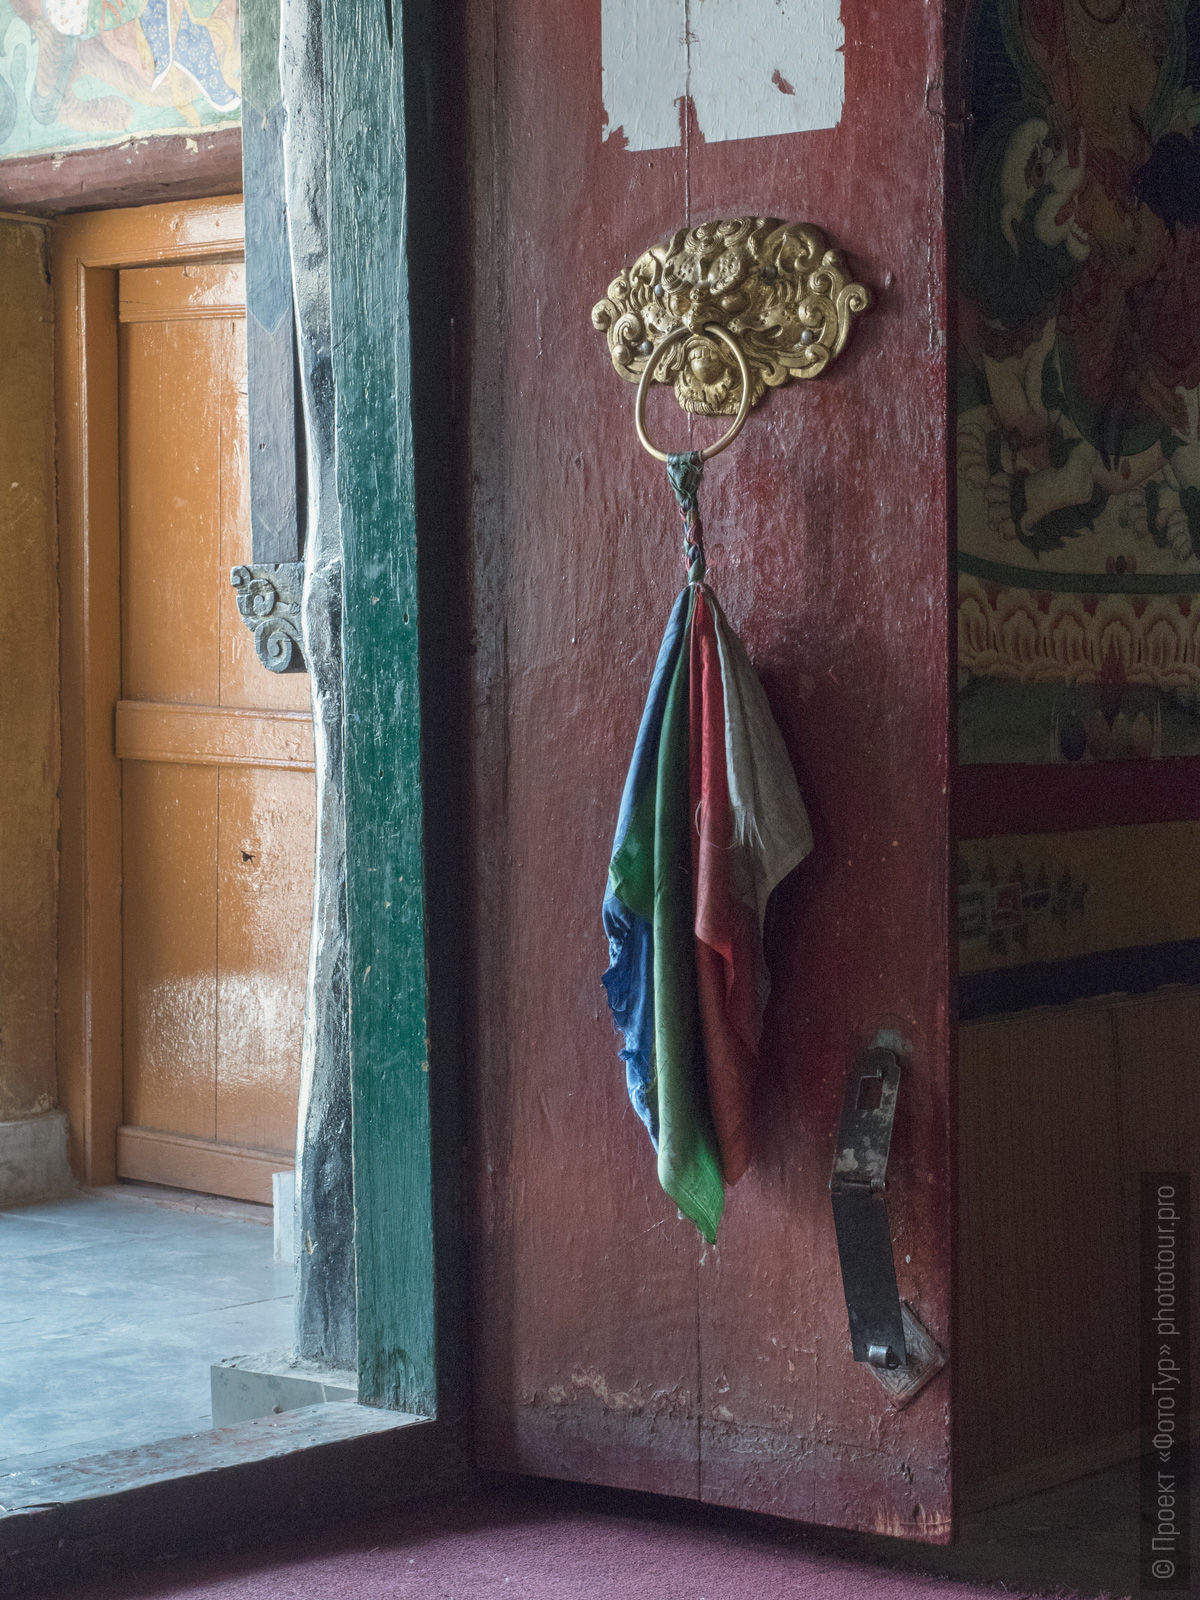 Дверь в новый друкханг, буддийский монастырь Ликир Гонпа, Ладакх, Гималаи, Северная Индия.